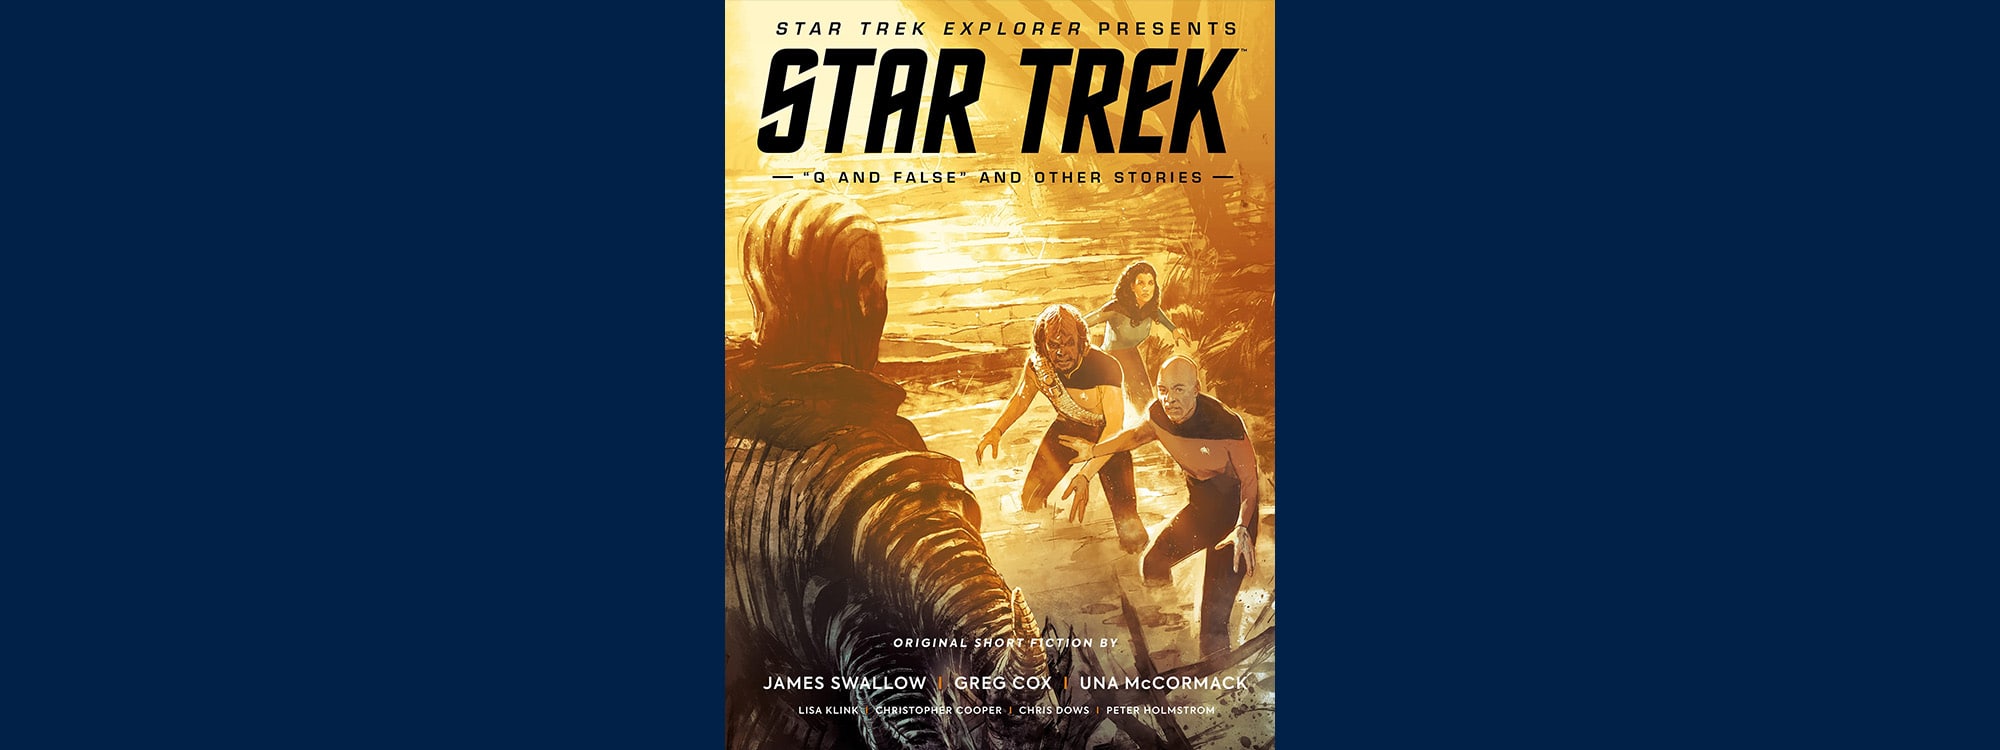 The front cover for star trek magazine